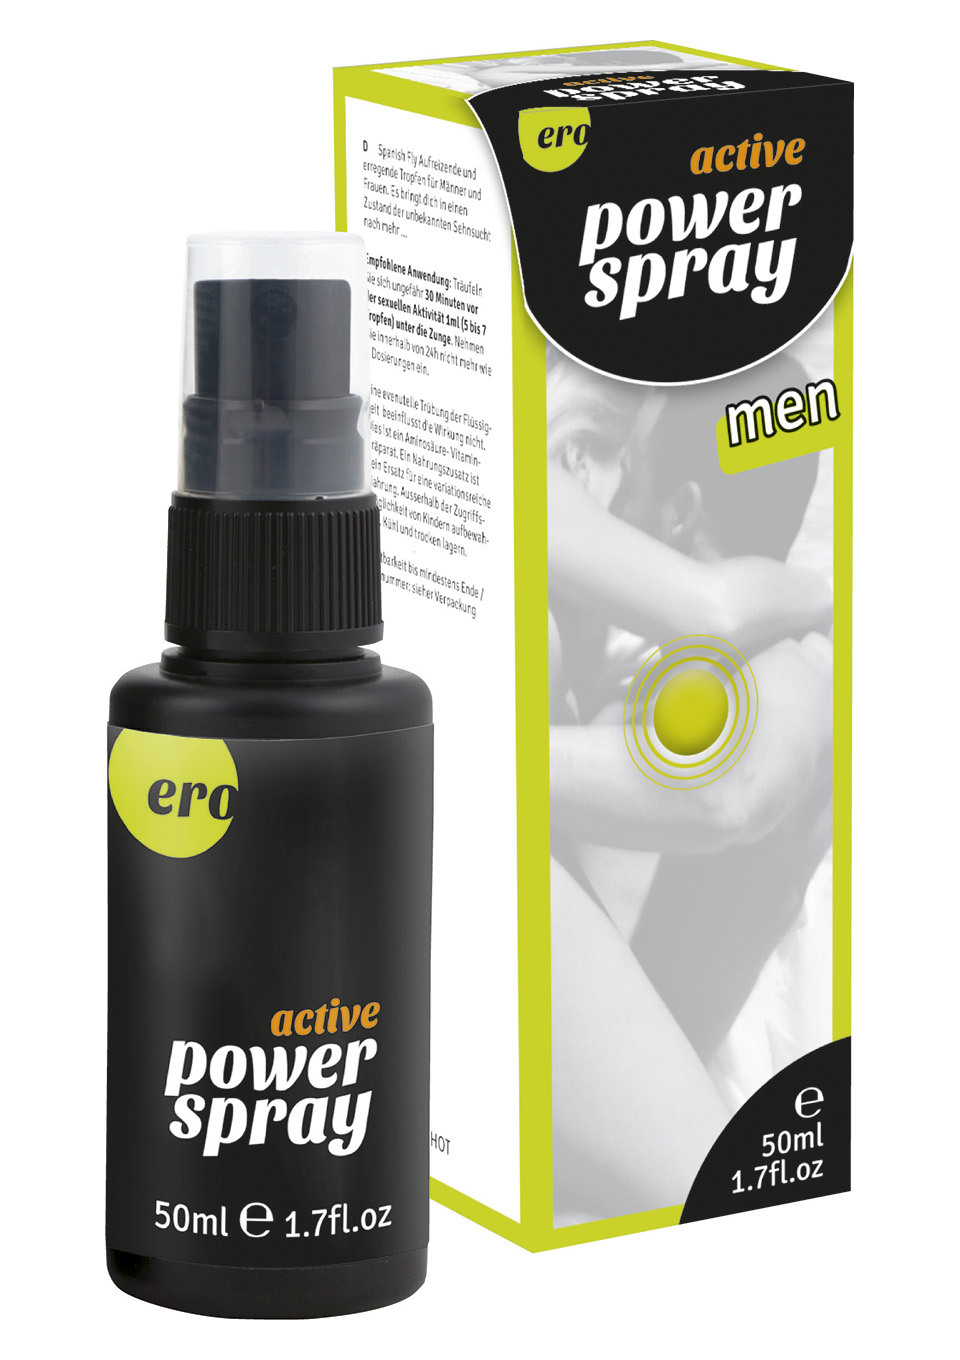 Active Power Spray men-50ml.